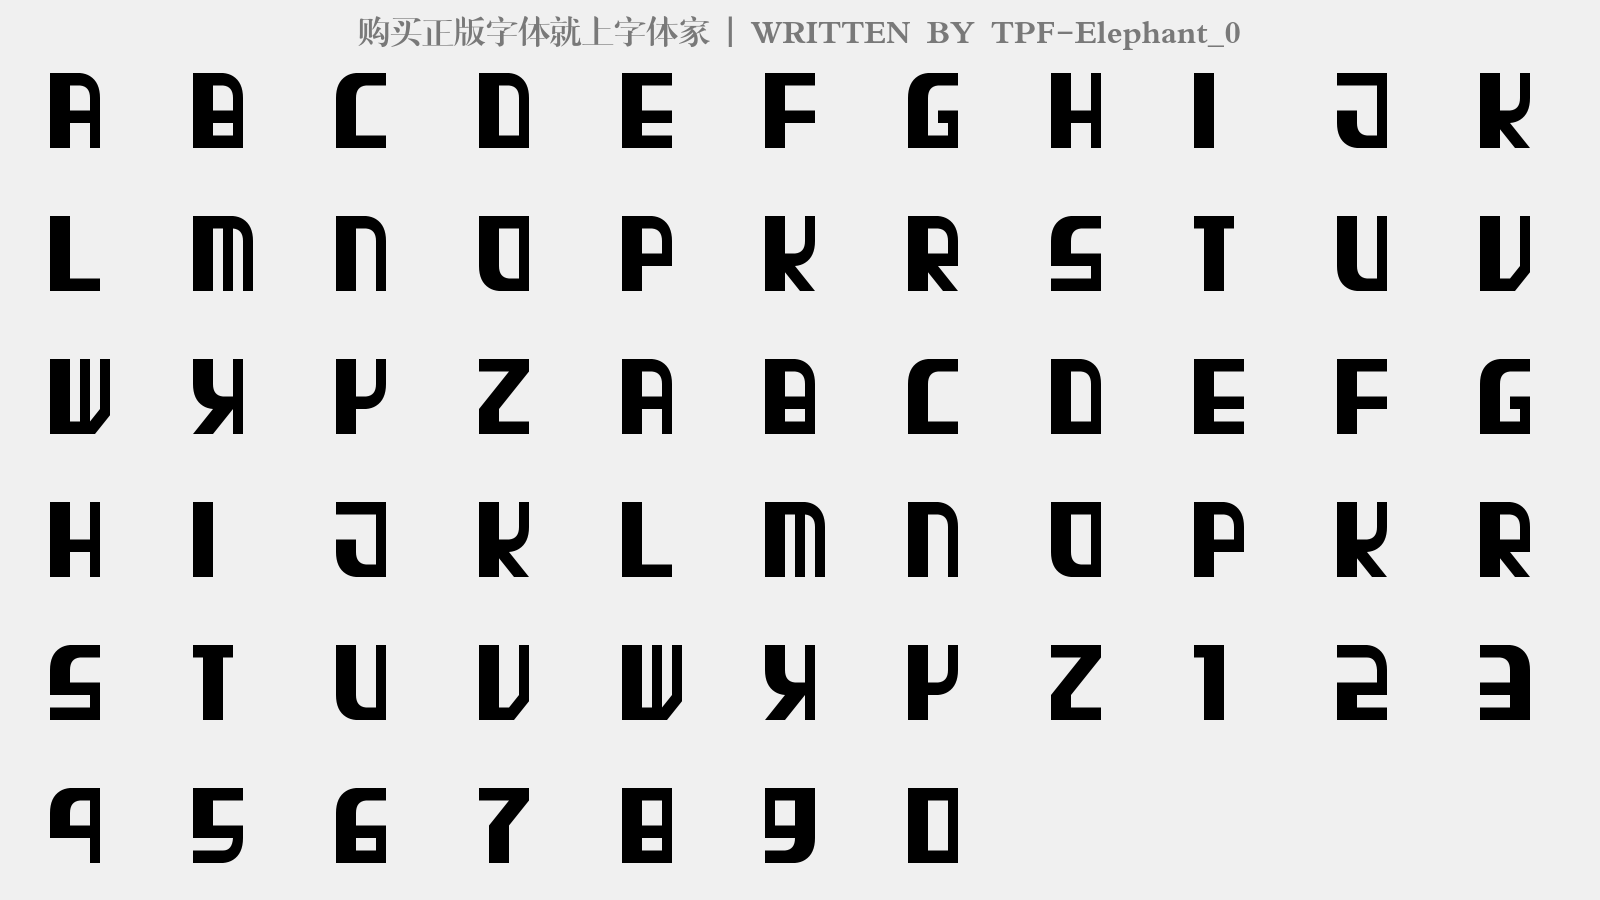 TPF-Elephant_0 - 大写字母/小写字母/数字